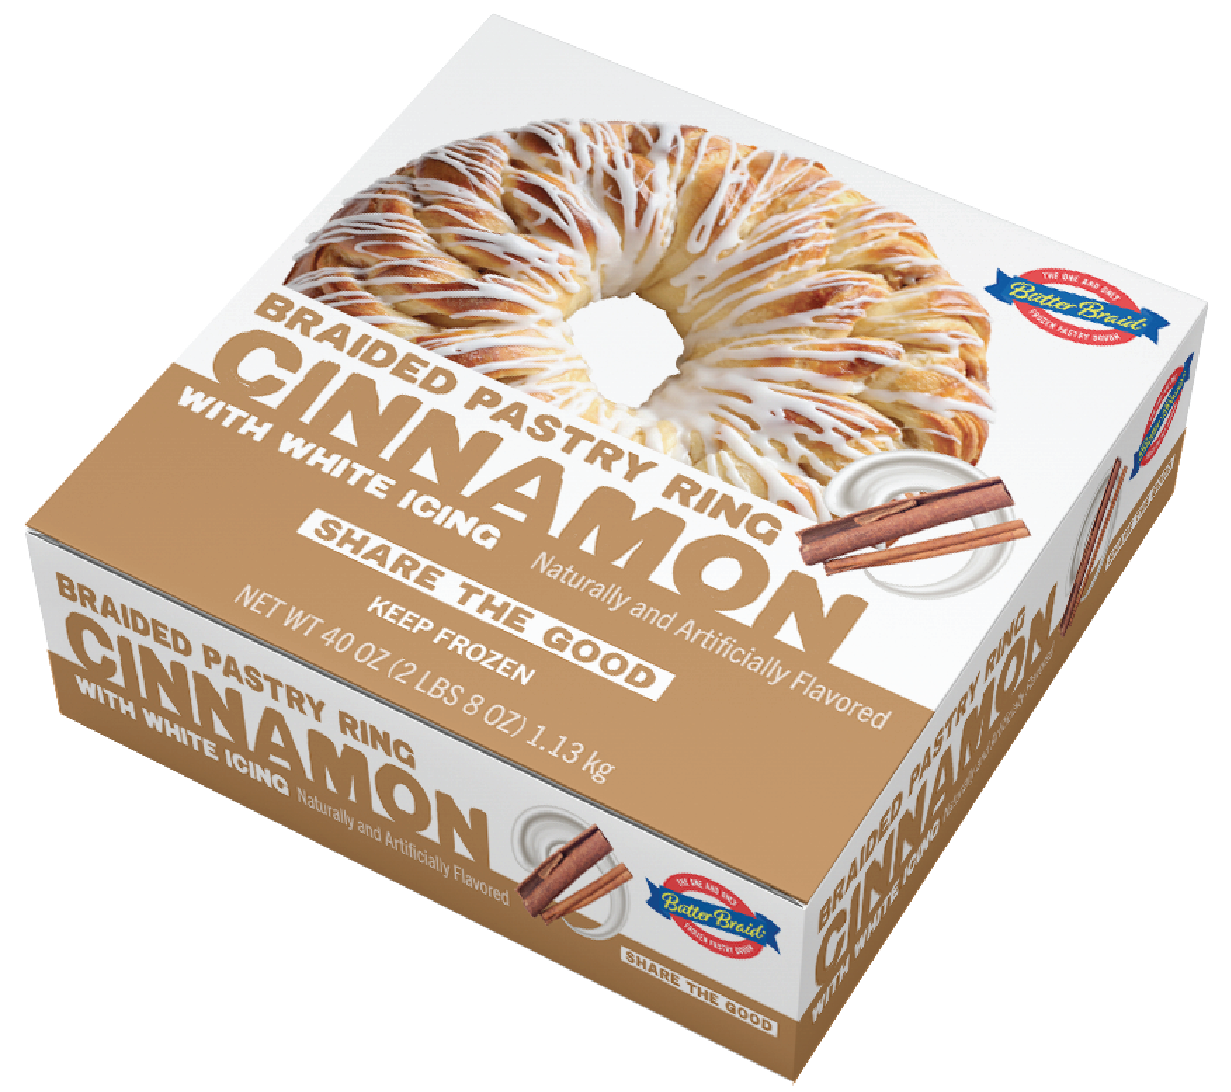 Cinnamon Braided Pastry Ring carton